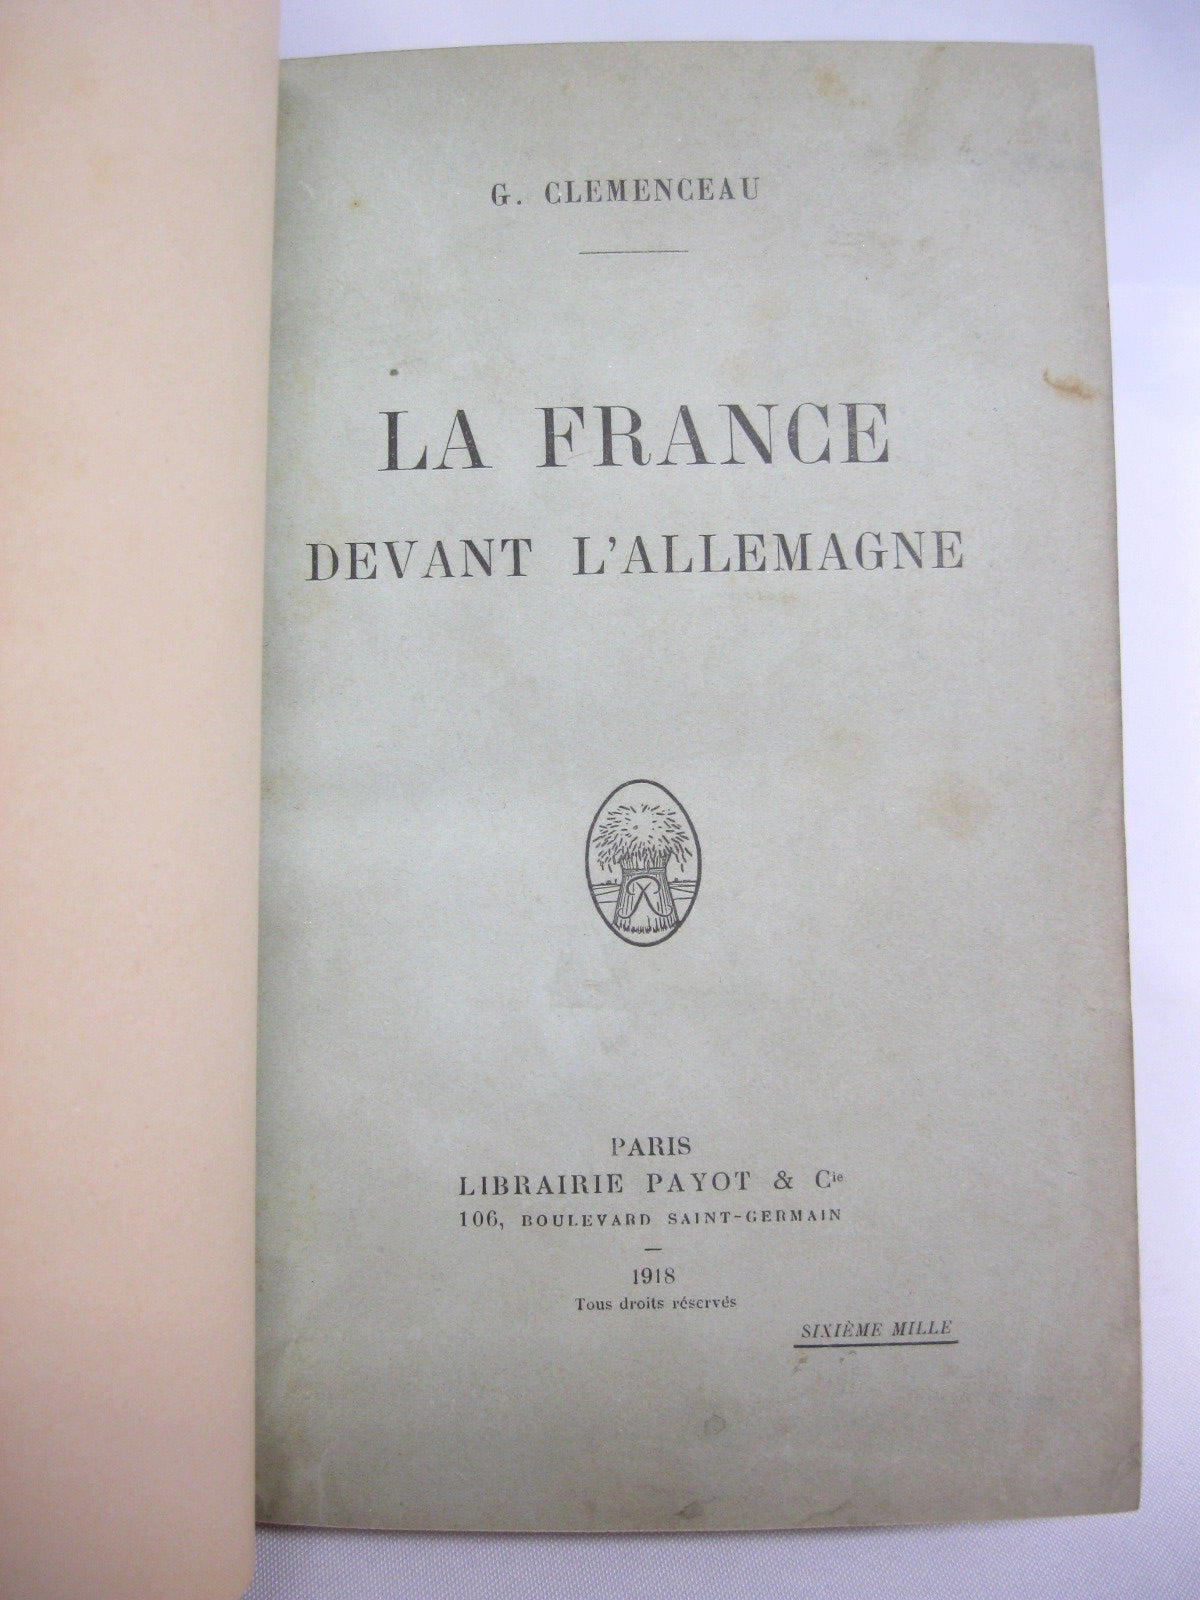 La France Devant l'Allemagne by Georges Clemenceau